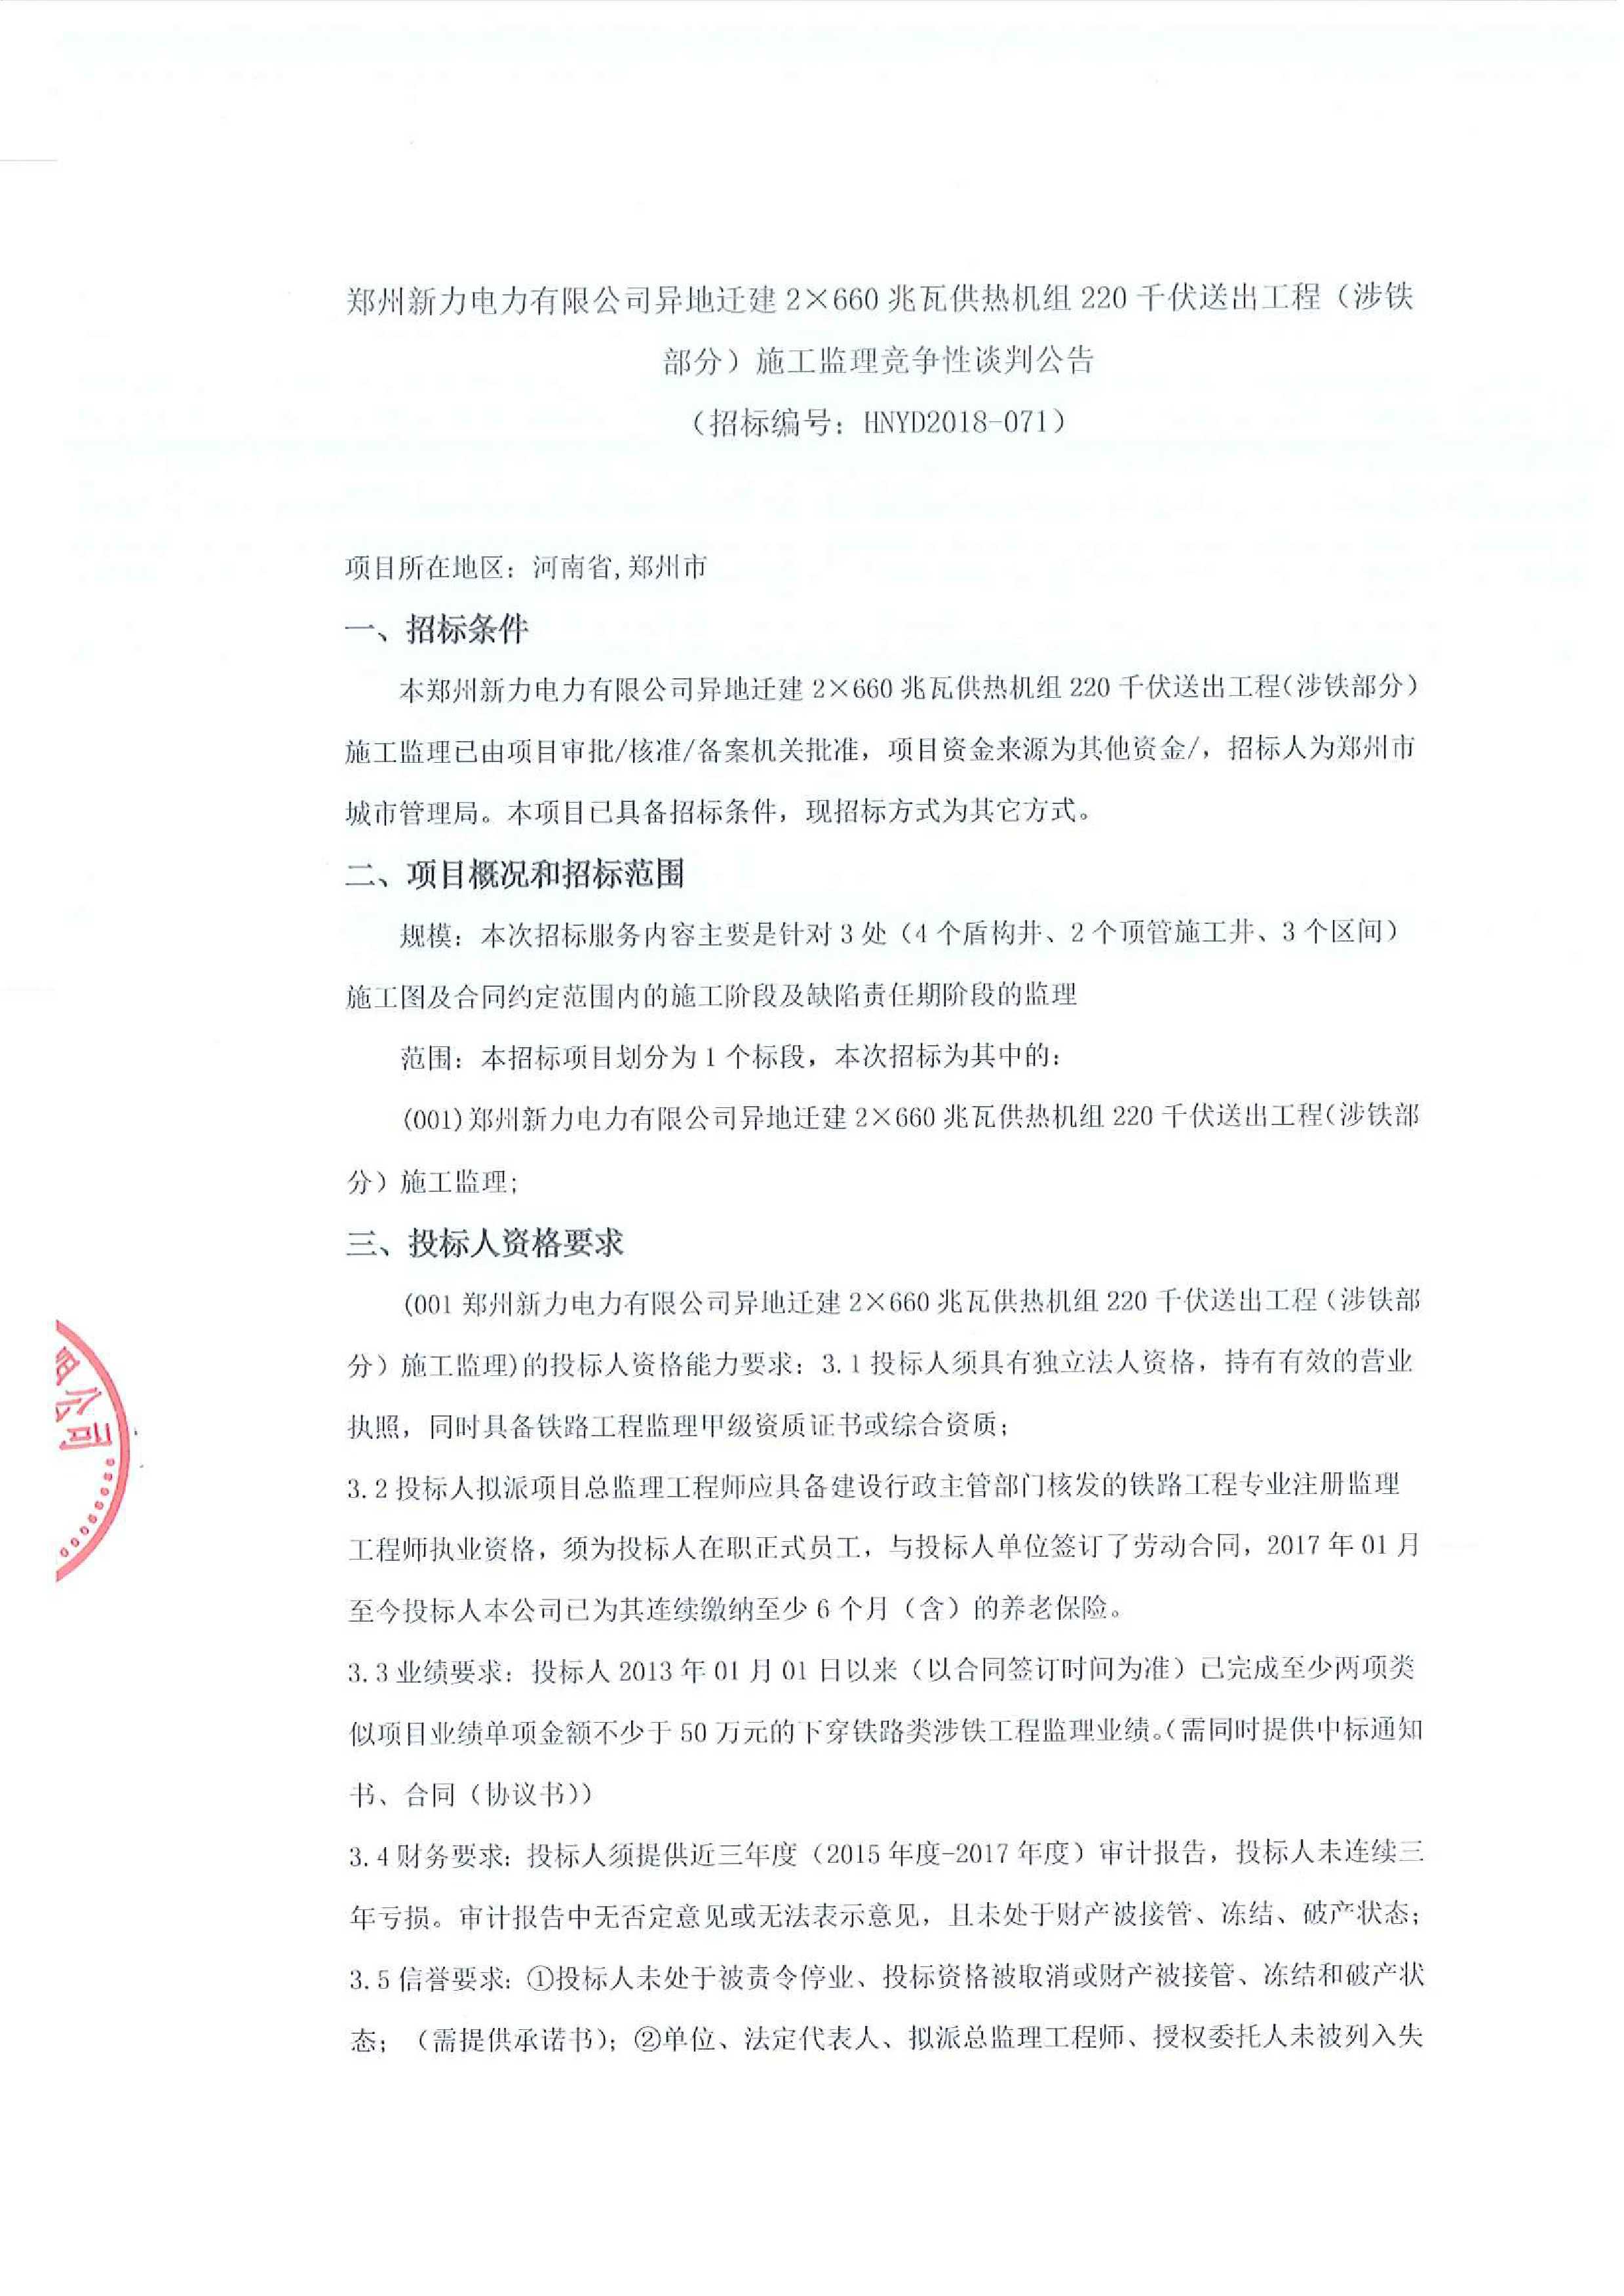 郑州新力电力有限公司异地迁建2660兆瓦供热